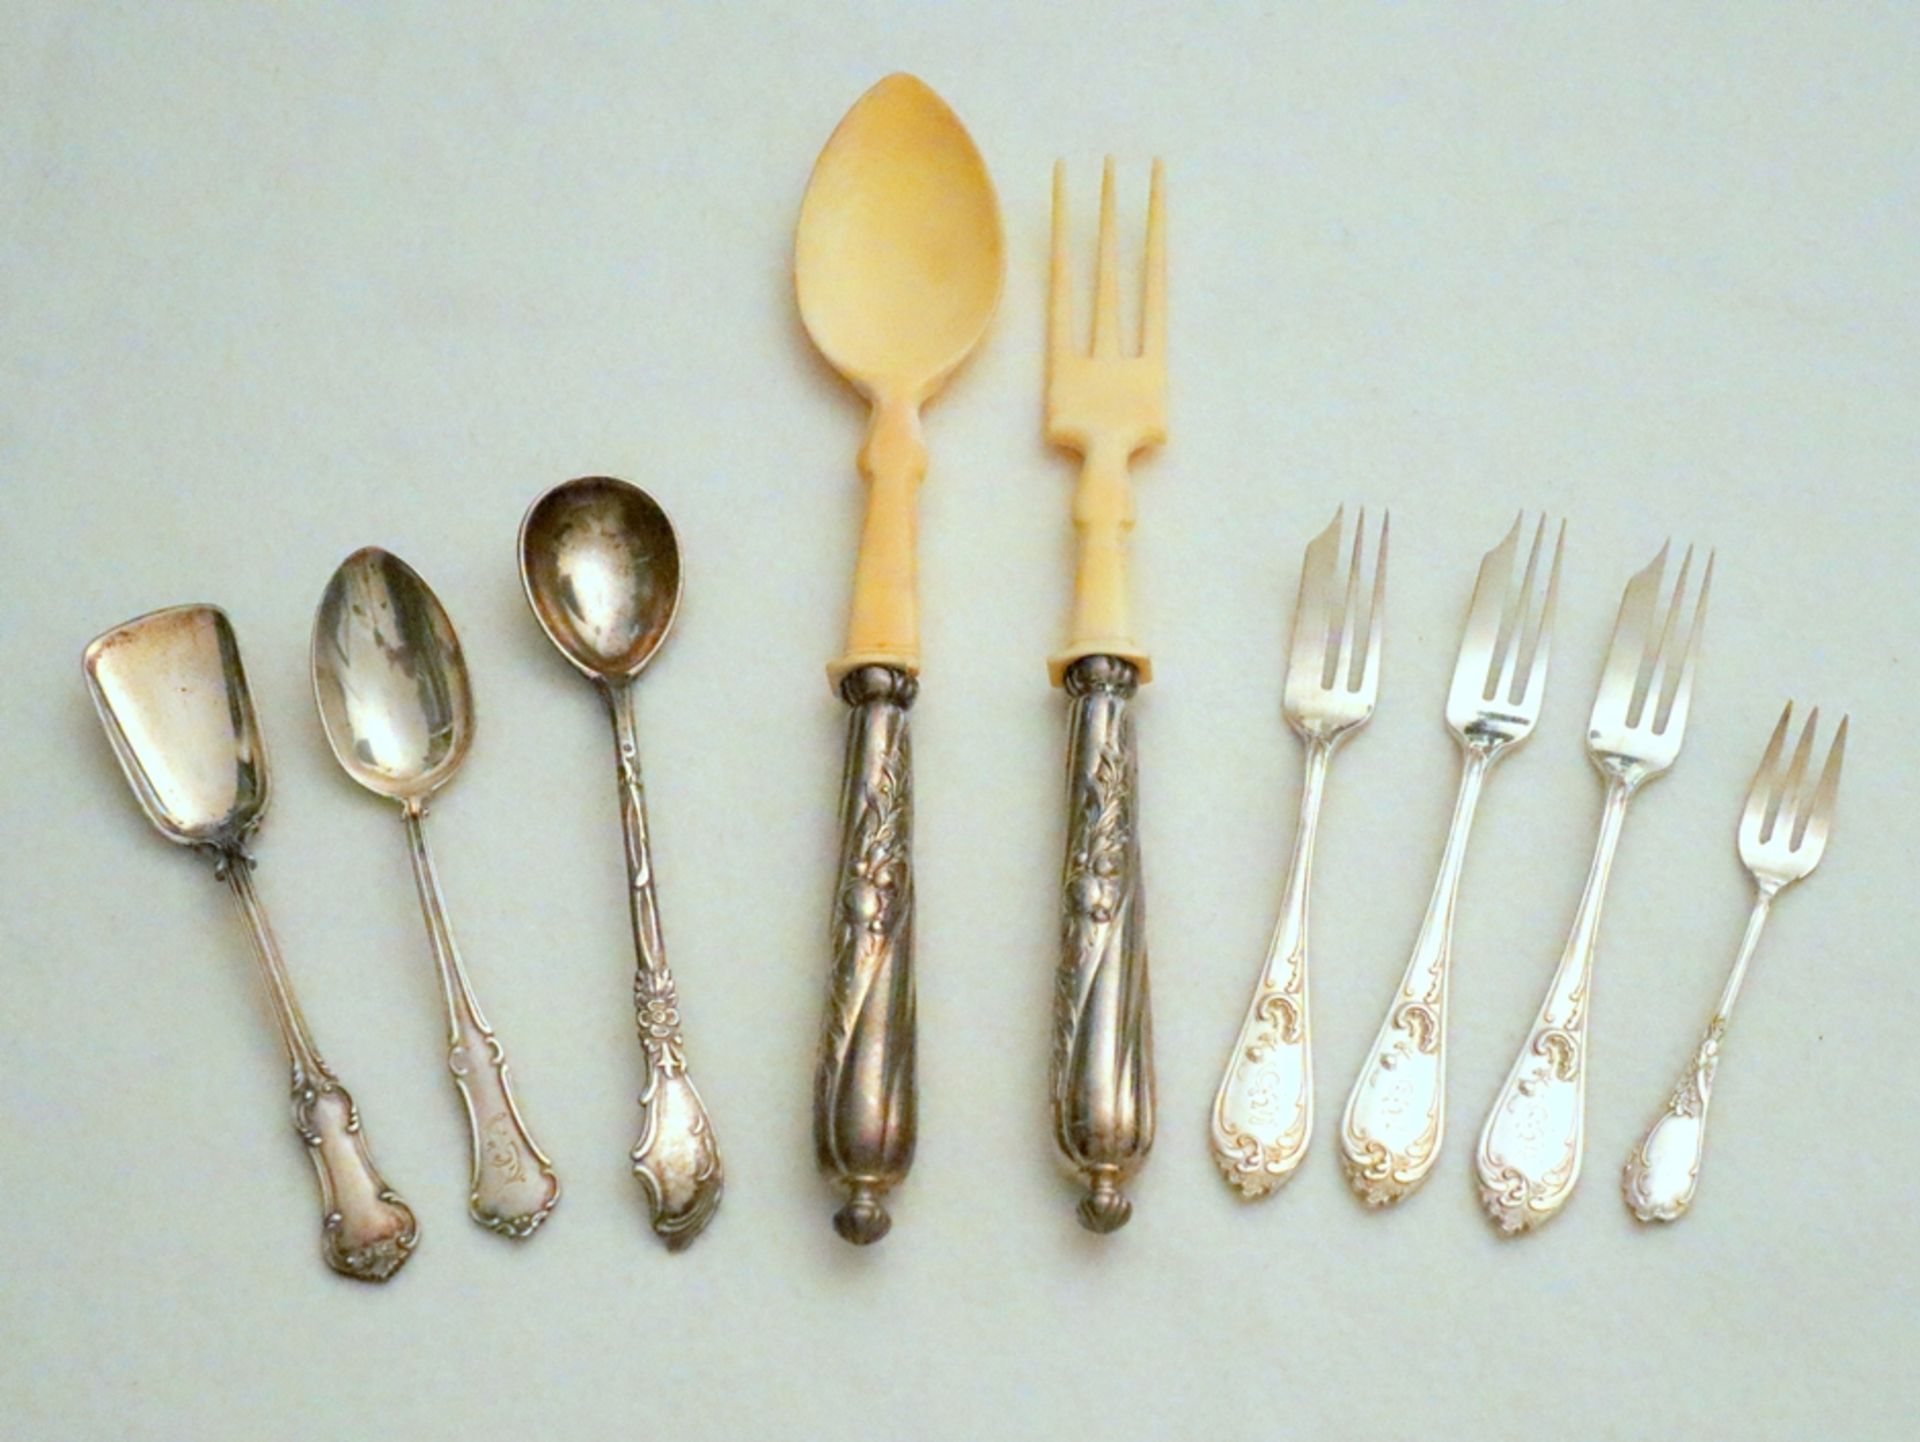 Convolute silver cutlery 875s, around 1890 to 1920